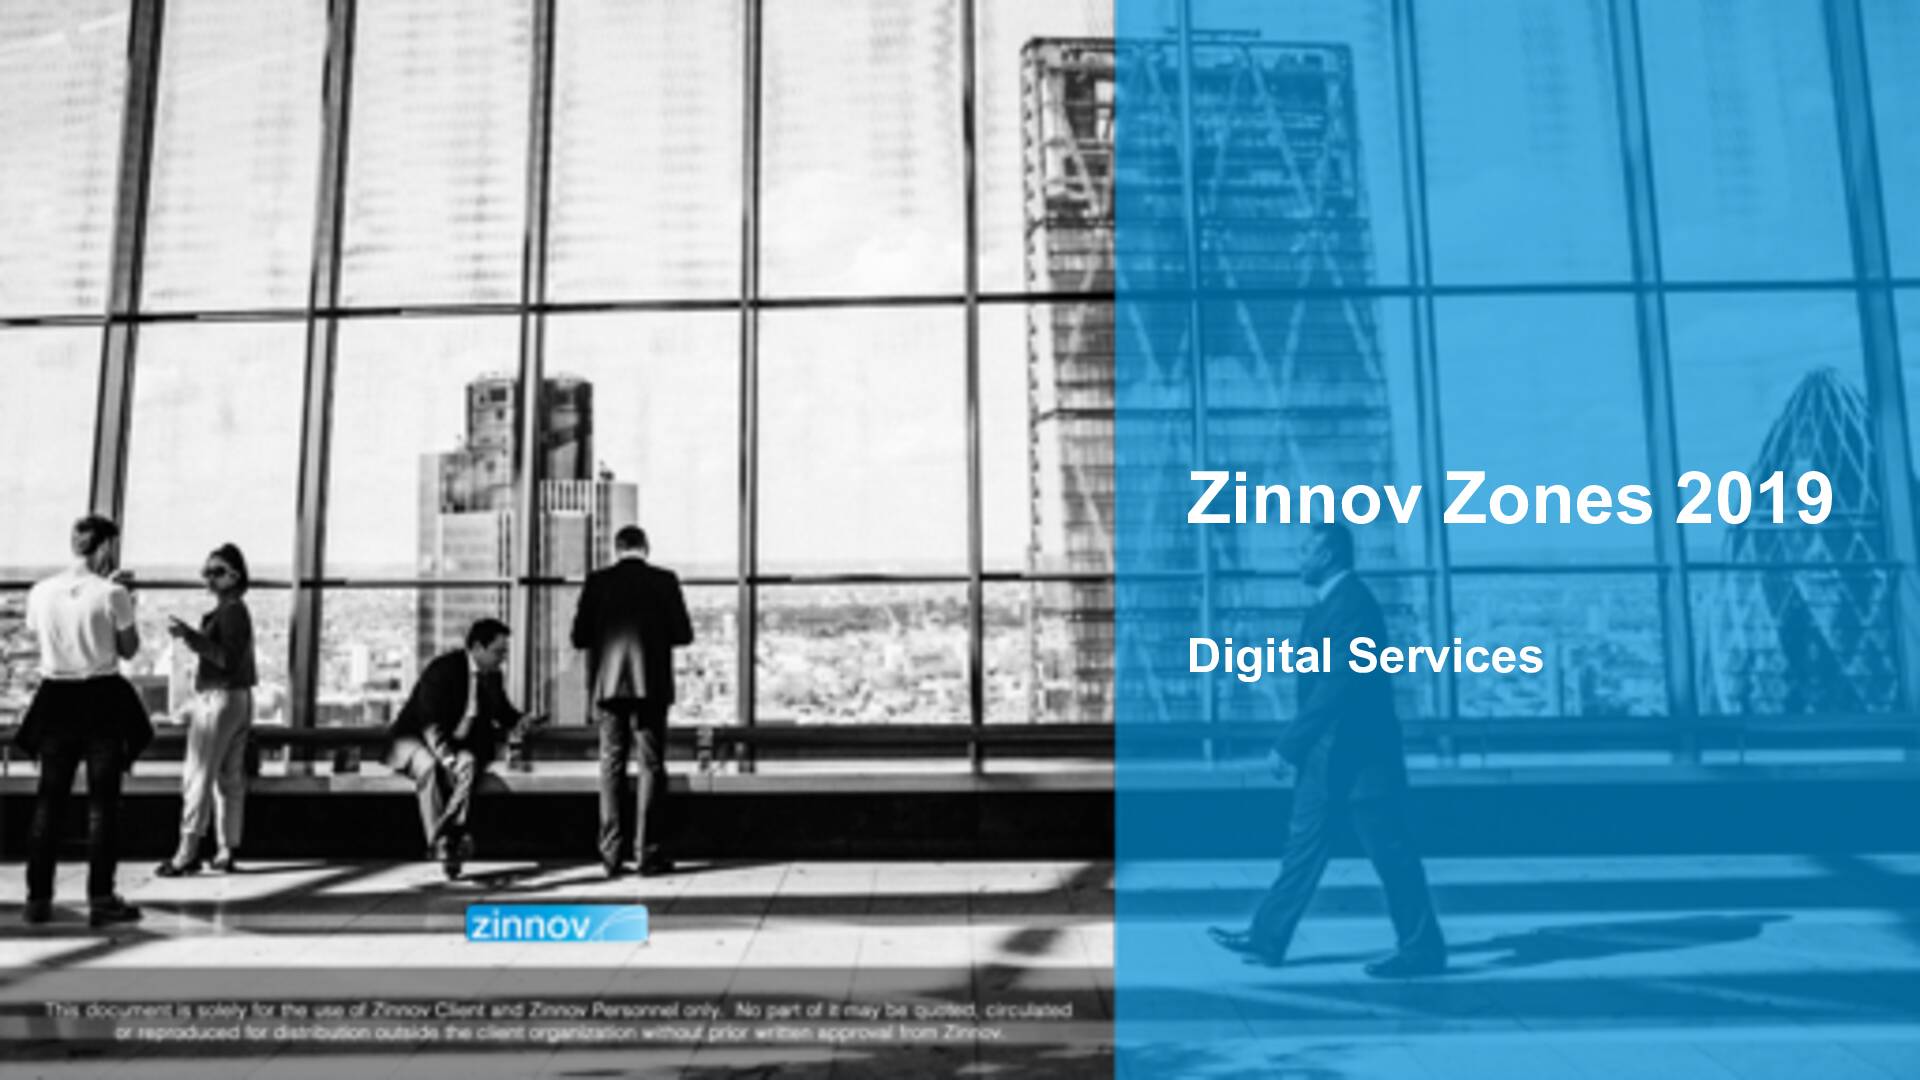 Zinnov Zones Digital Services 20191